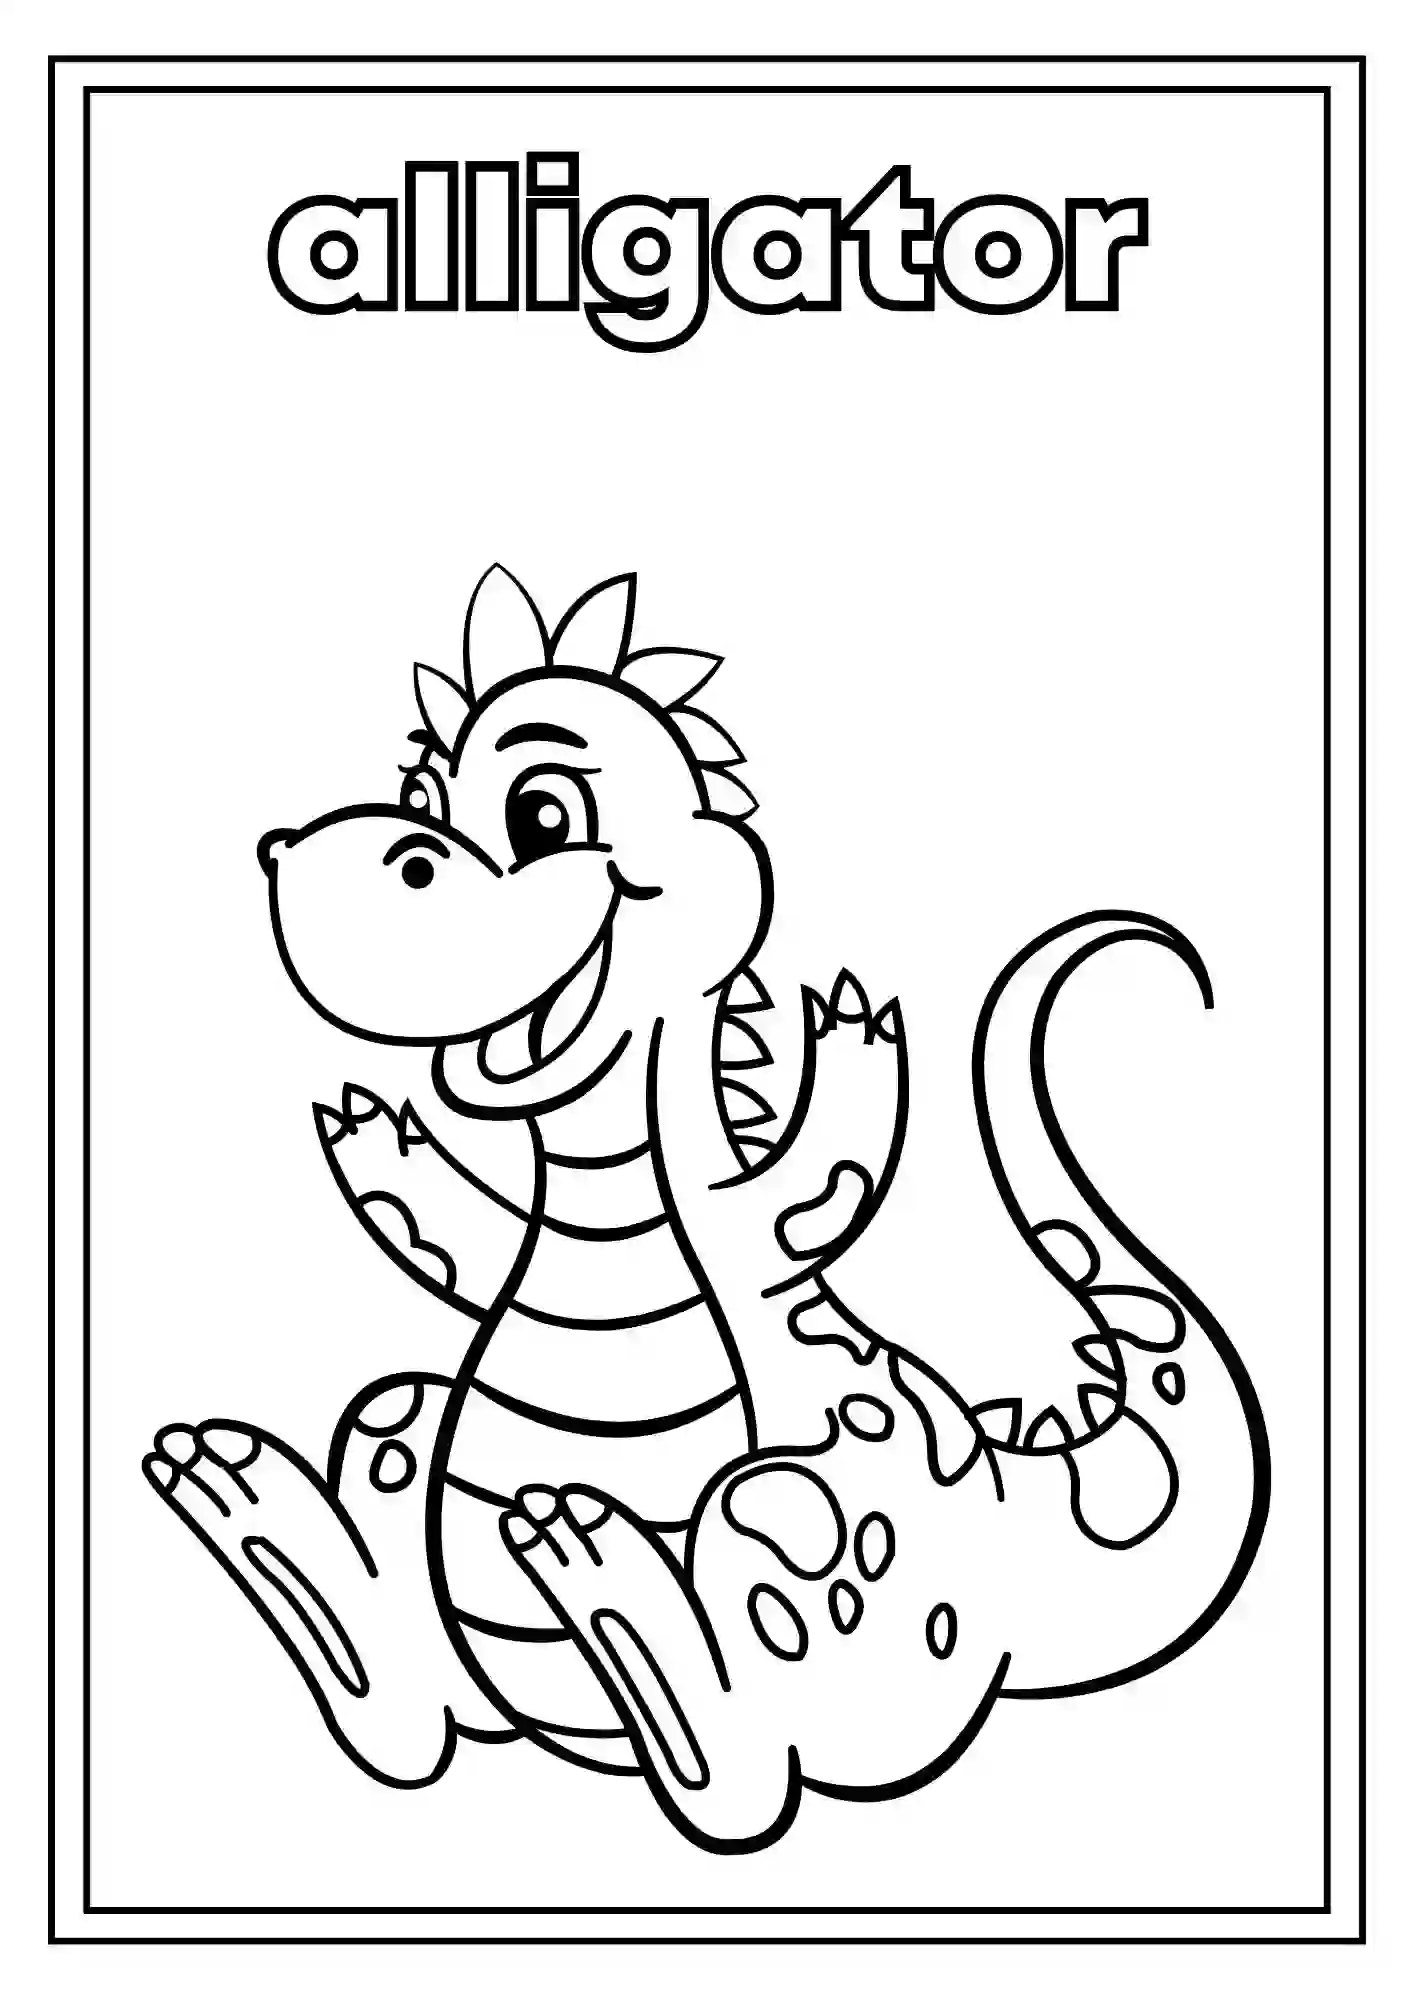 Animal Coloring Worksheets for Kindergarten Part 2 (ALLIGATOR)